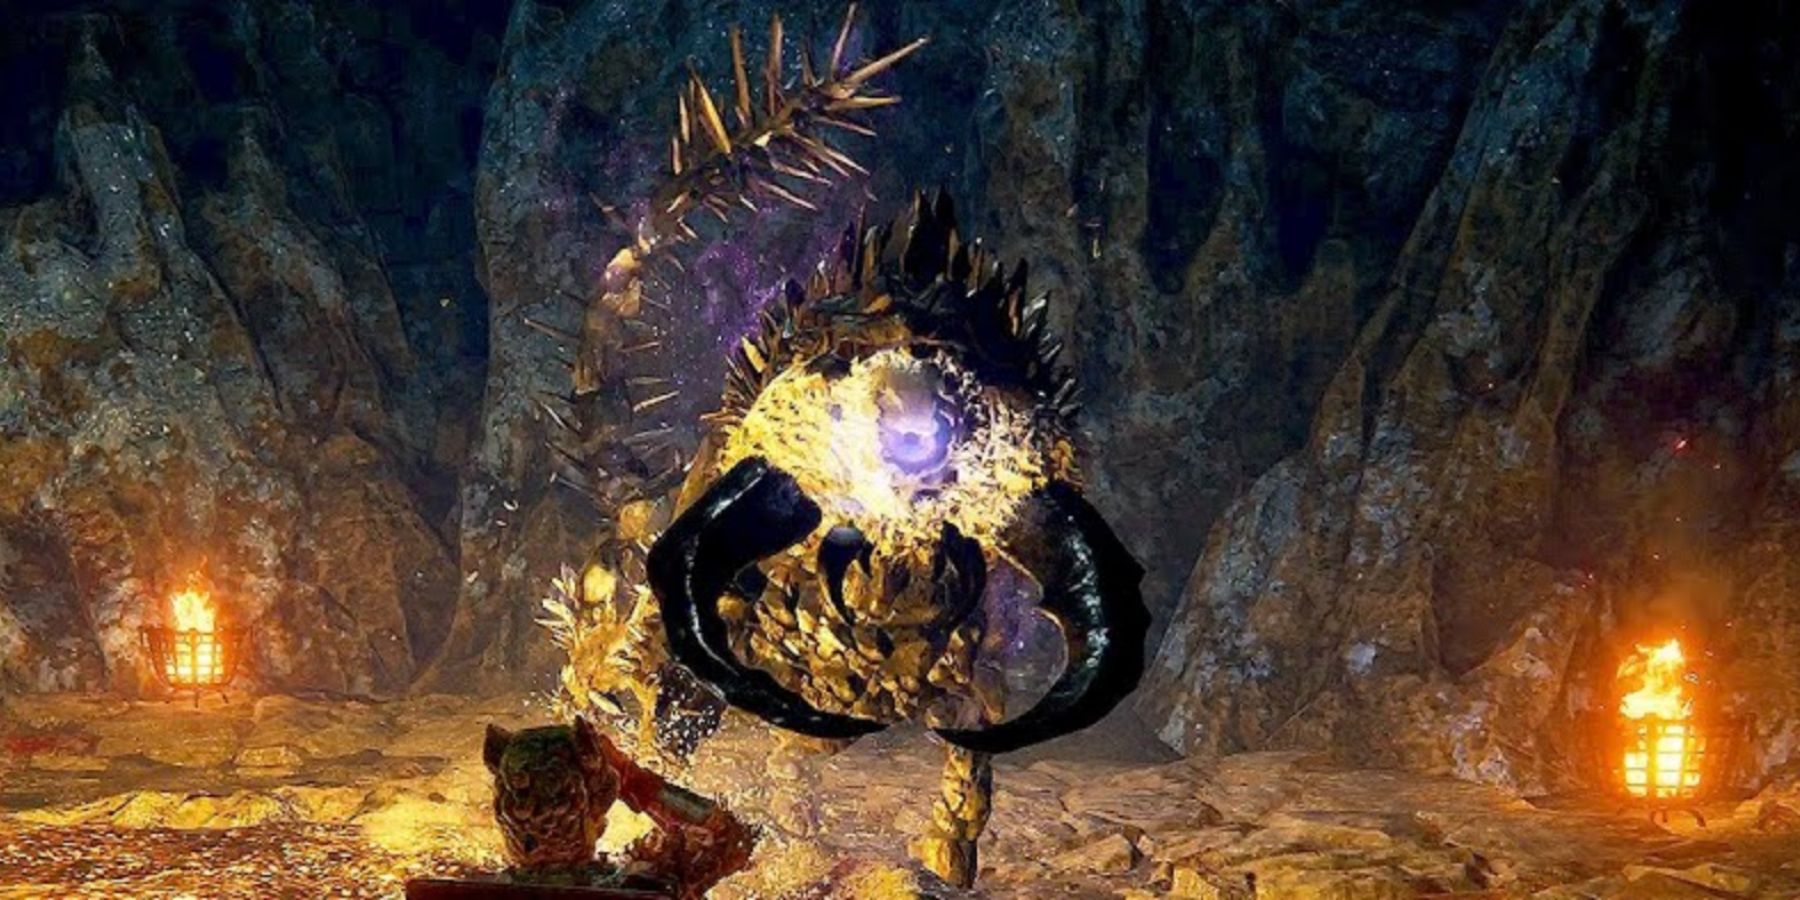 Fallingstar Beast in elden ring